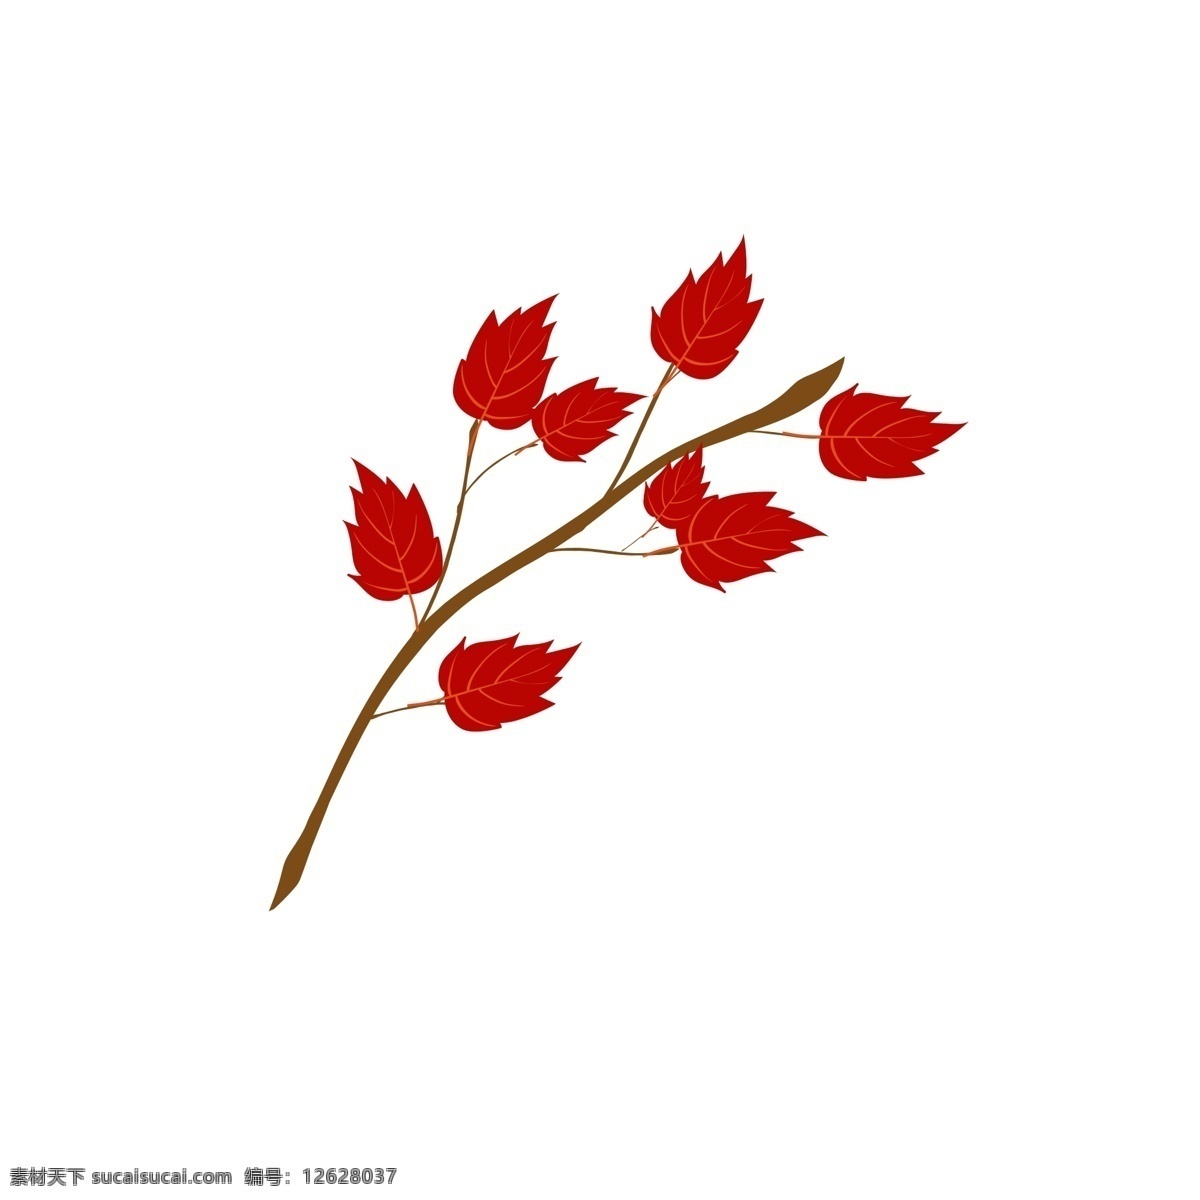 秋季 红叶 迷人 叶子 红色 秋色 美丽 秋天 景色 漂亮 艳丽 树叶